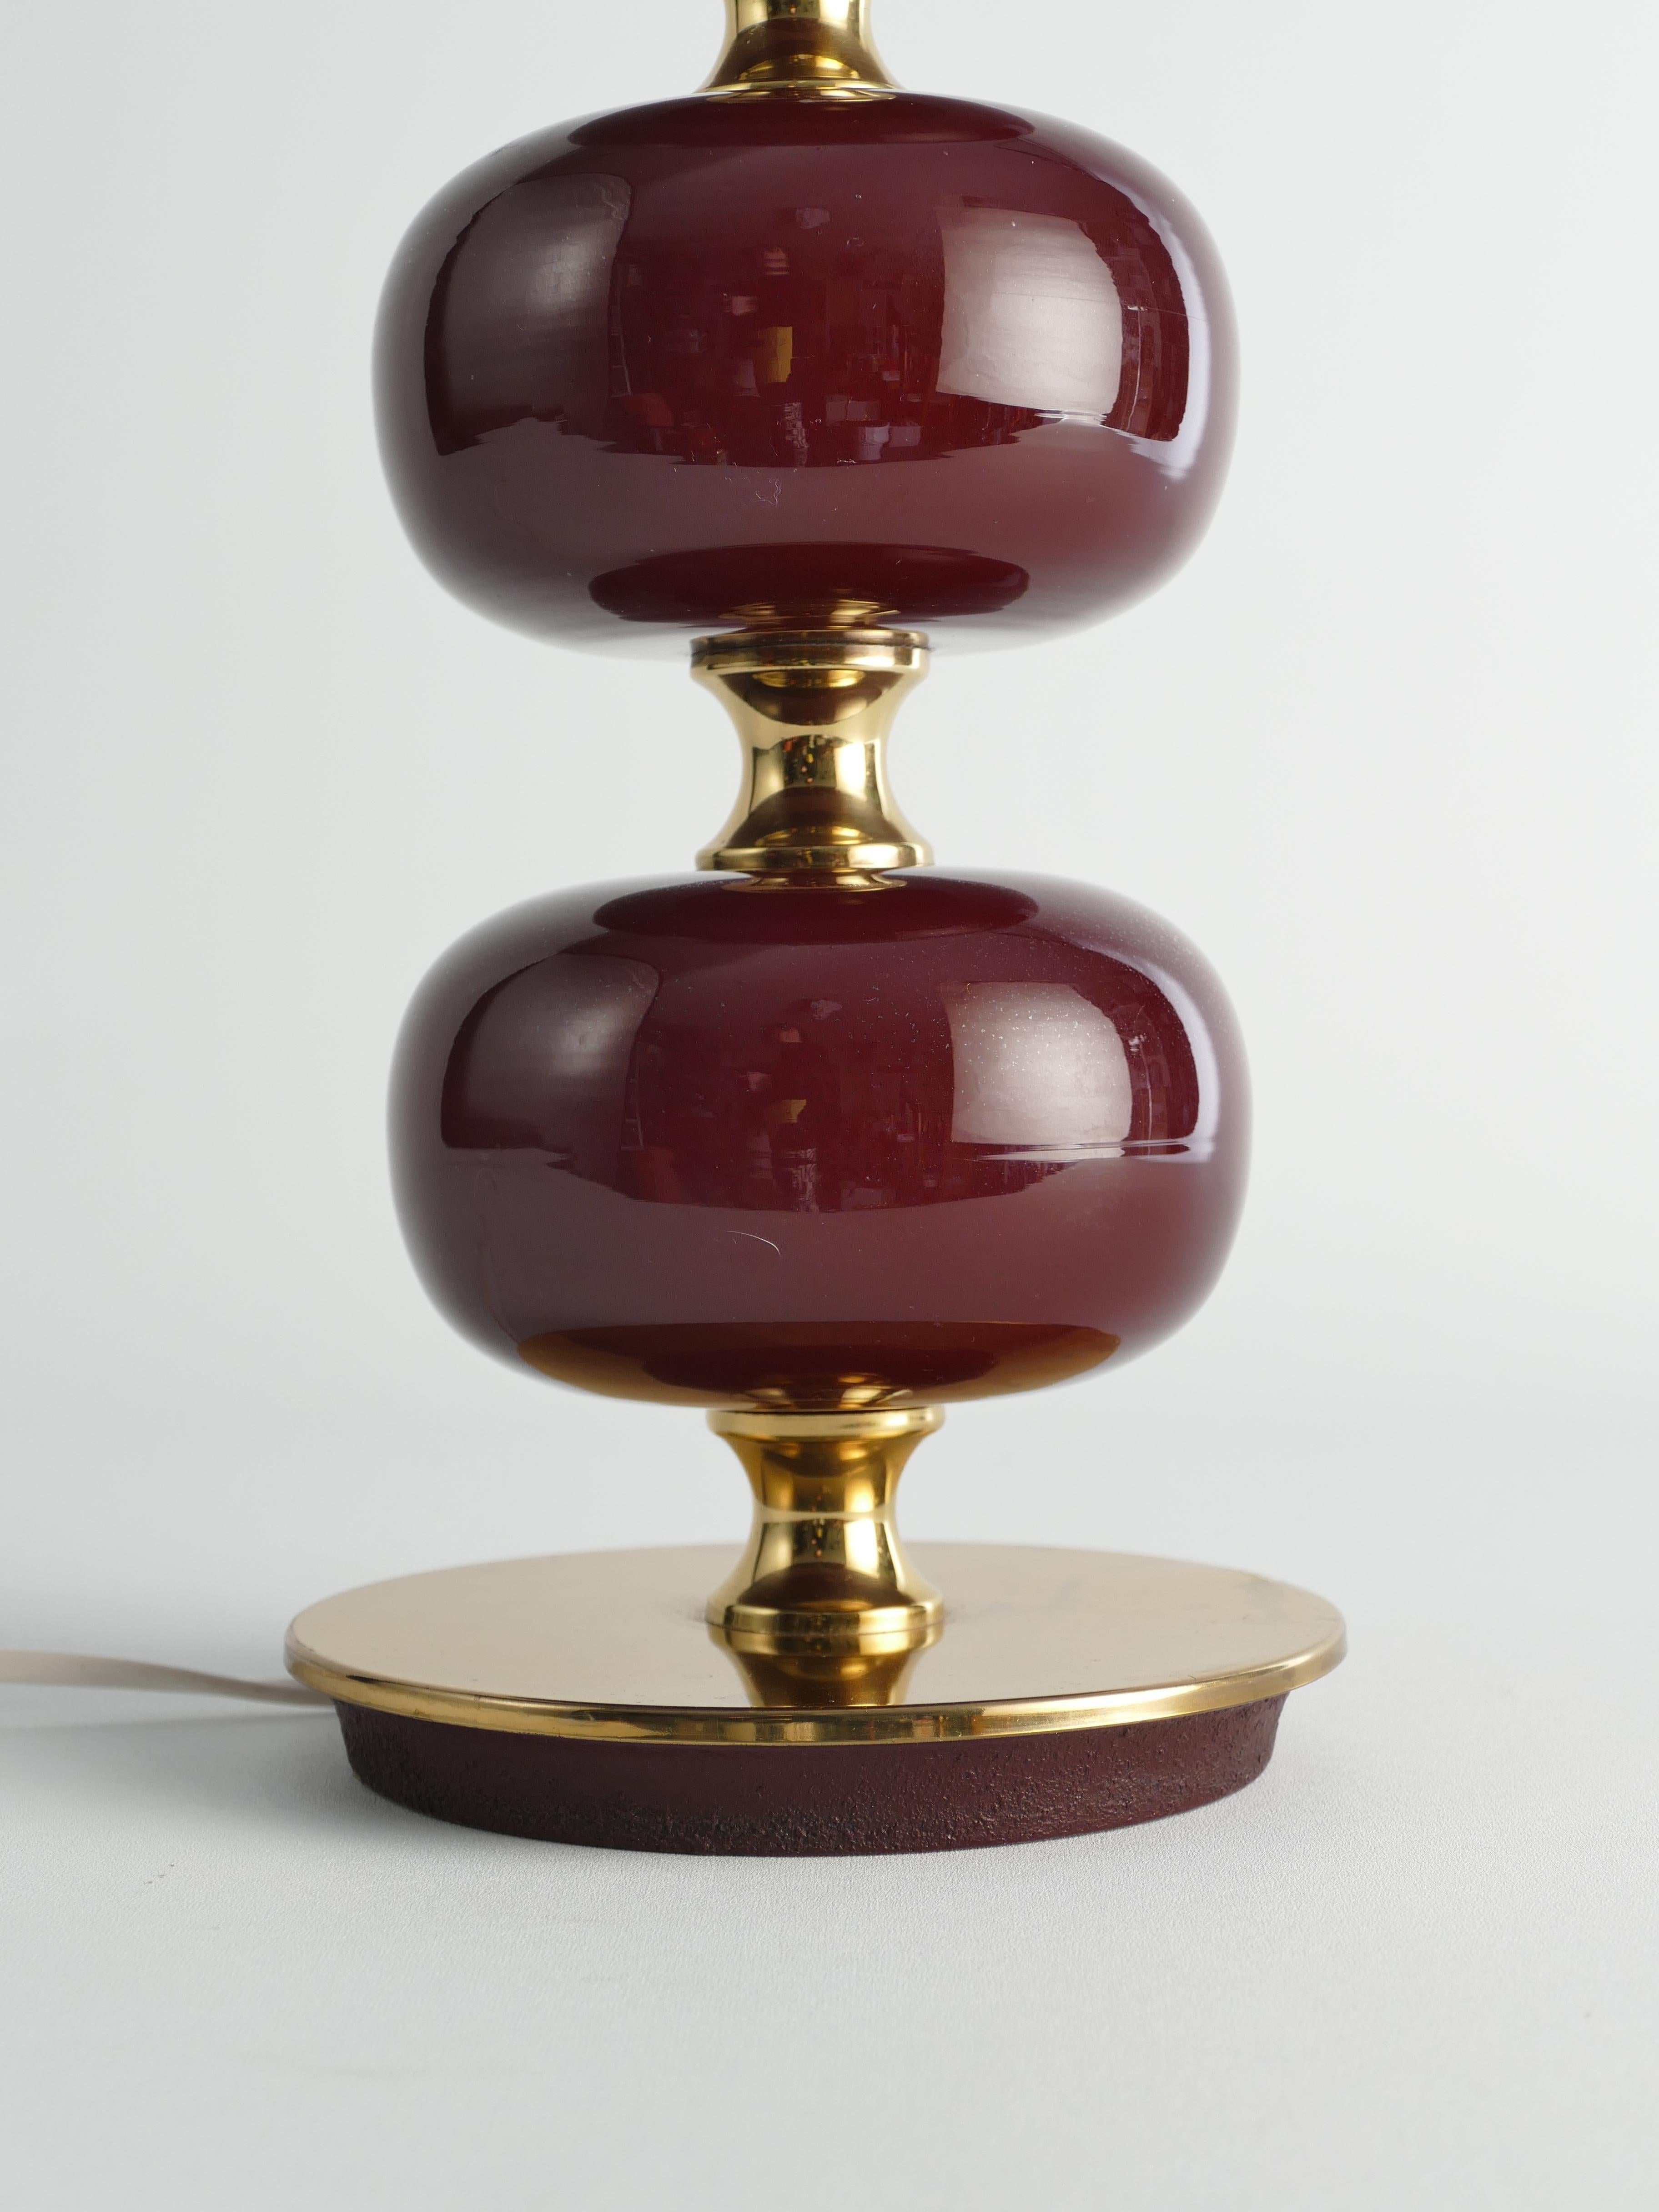 Esta lámpara de sobremesa de mediados de siglo, fabricada por Stilarmatur Tranås en Suecia entre los años 60 y 70, presenta tres esferas de cristal rojo burdeos con pies y detalles de latón.

Diseñado por Henrik Blomqvist para Tranås Stilarmatur,